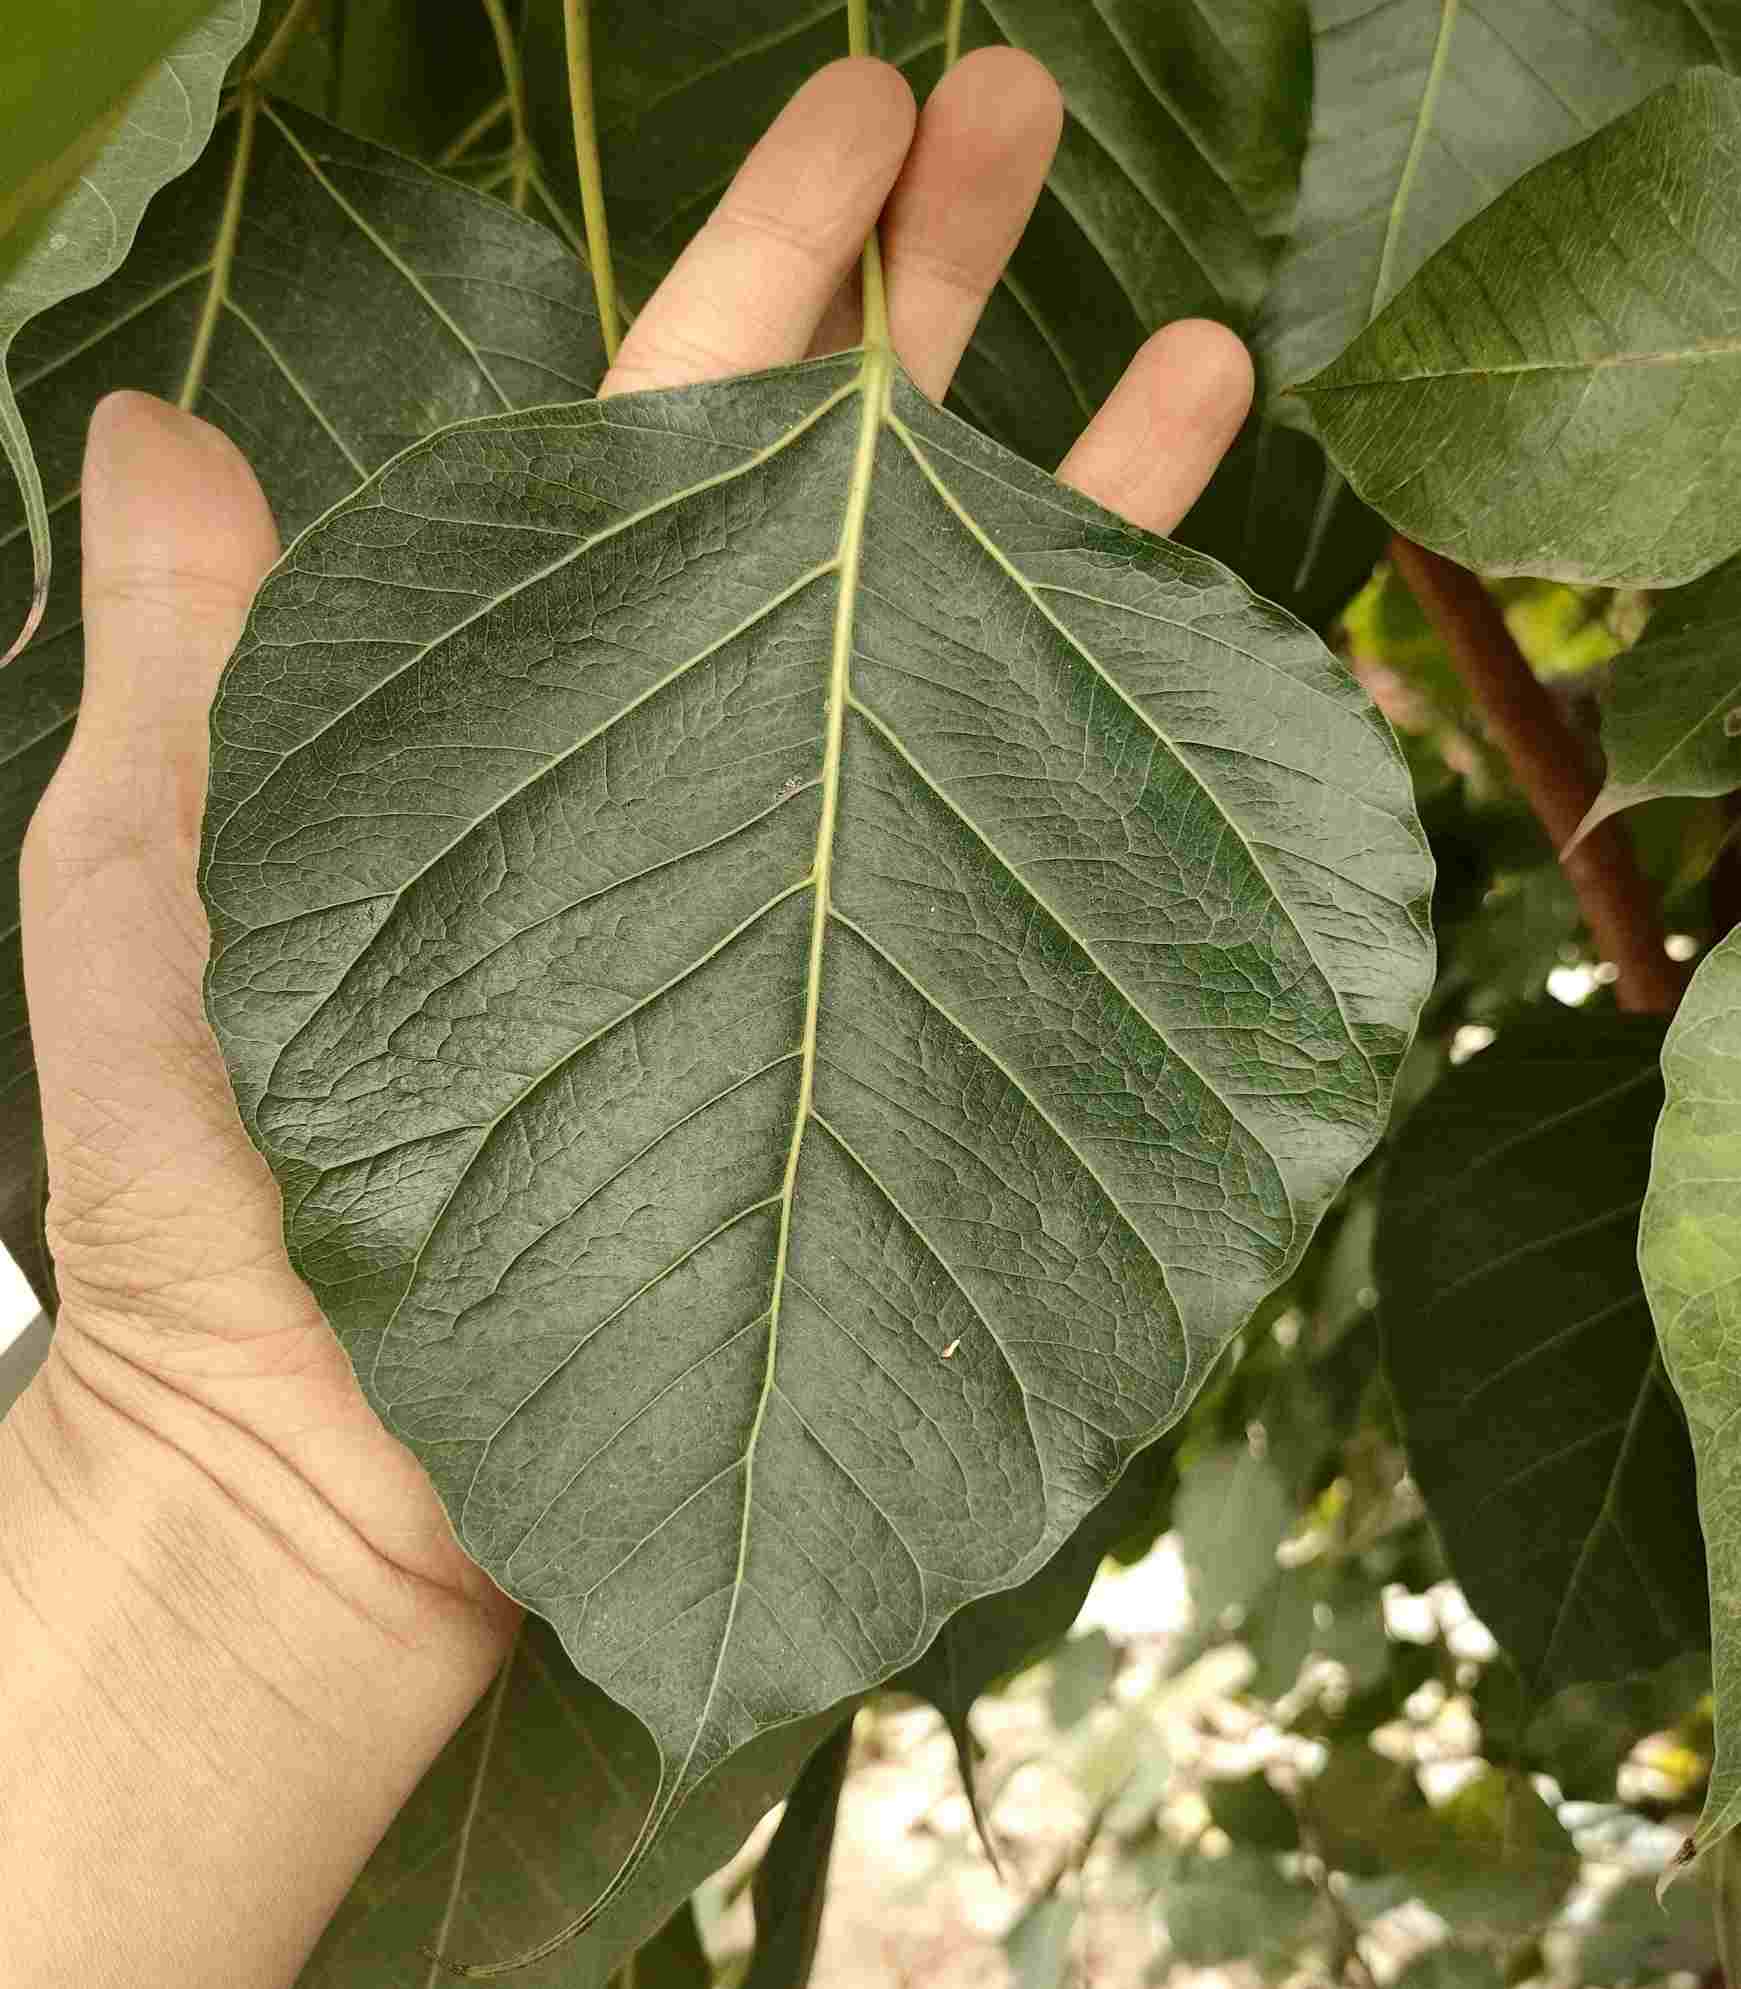 Lá cây dạng hình trái tim, có đuôi ở chóp lá dài khoảng 2-3 cm (đây là cây bồ đề đạo tràng). Lá cây bản rộng, to hơn bàn tay người. 